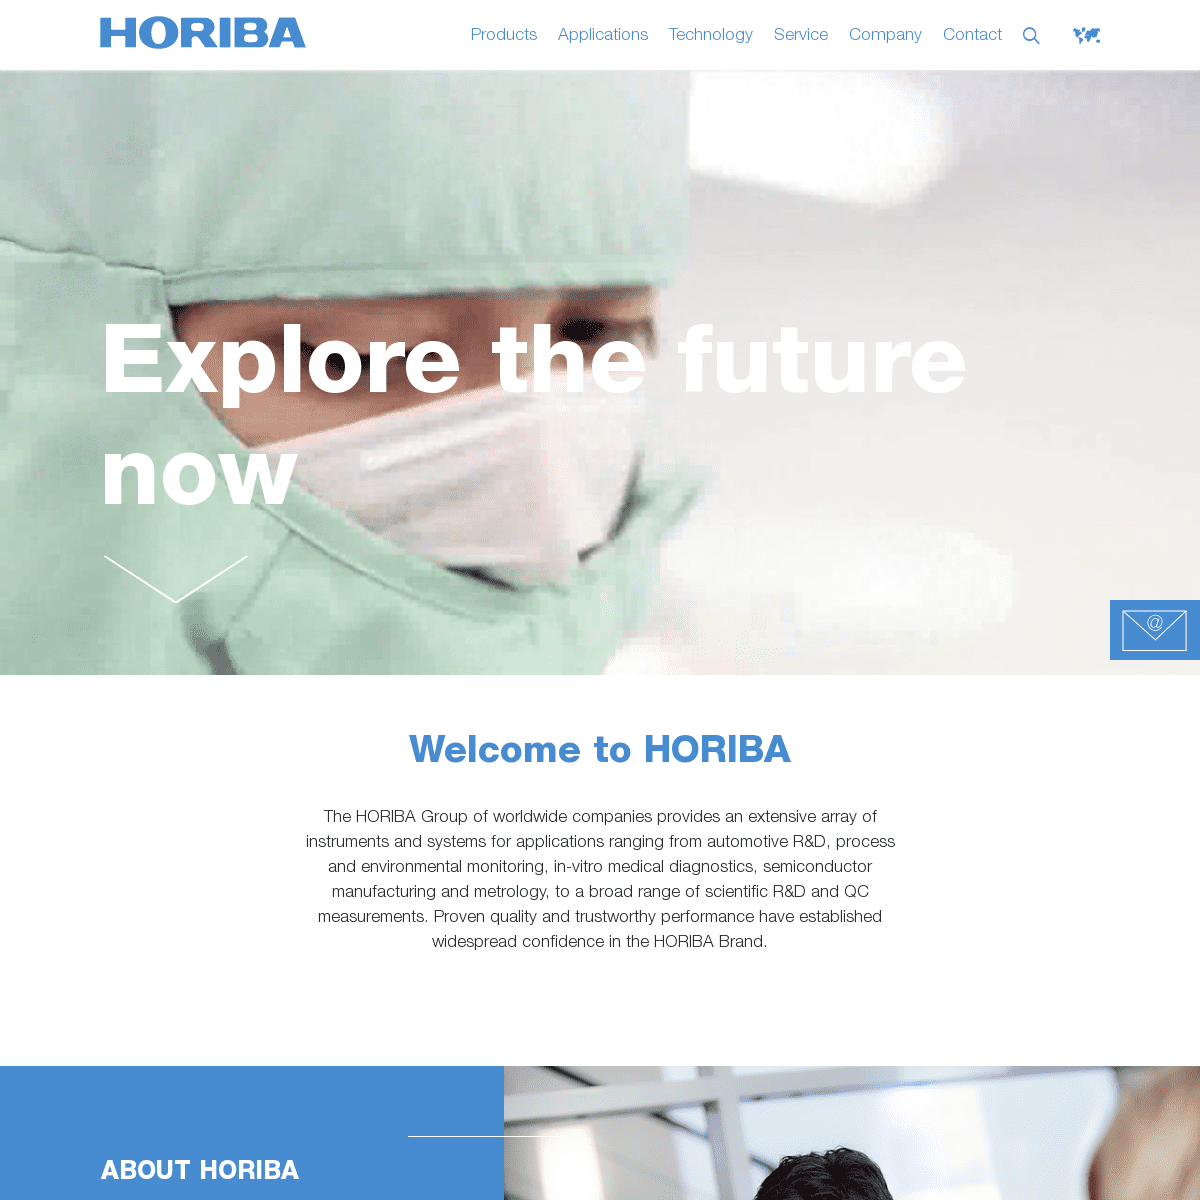 A complete backup of horiba.com